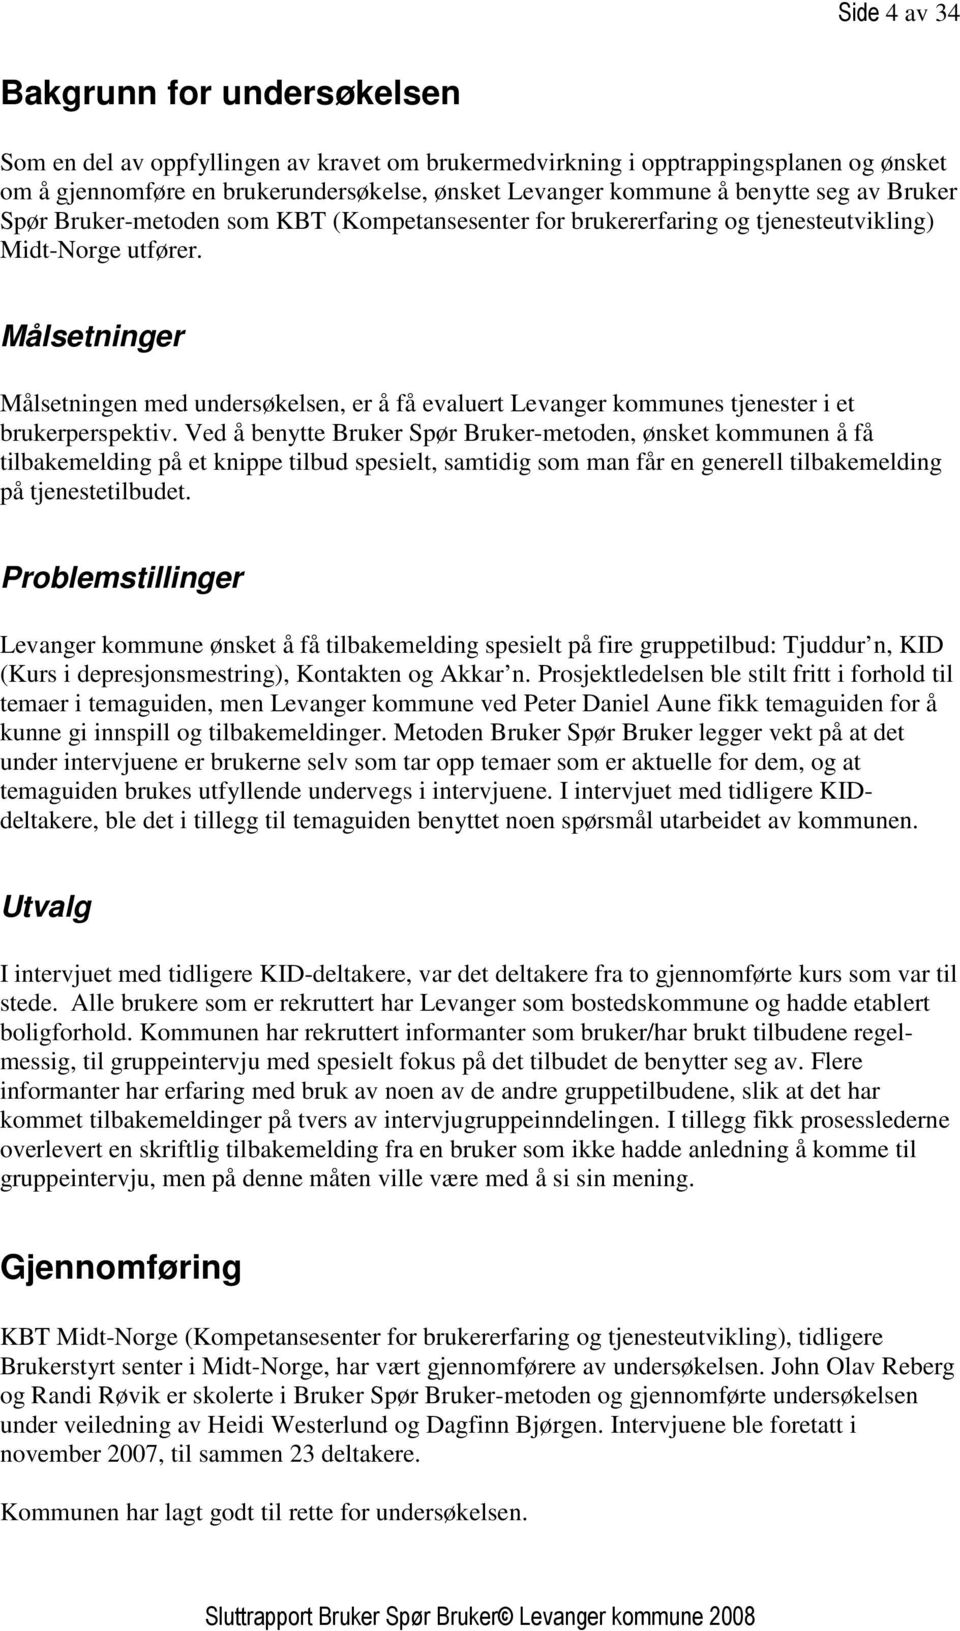 Målsetninger Målsetningen med undersøkelsen, er å få evaluert Levanger kommunes tjenester i et brukerperspektiv.